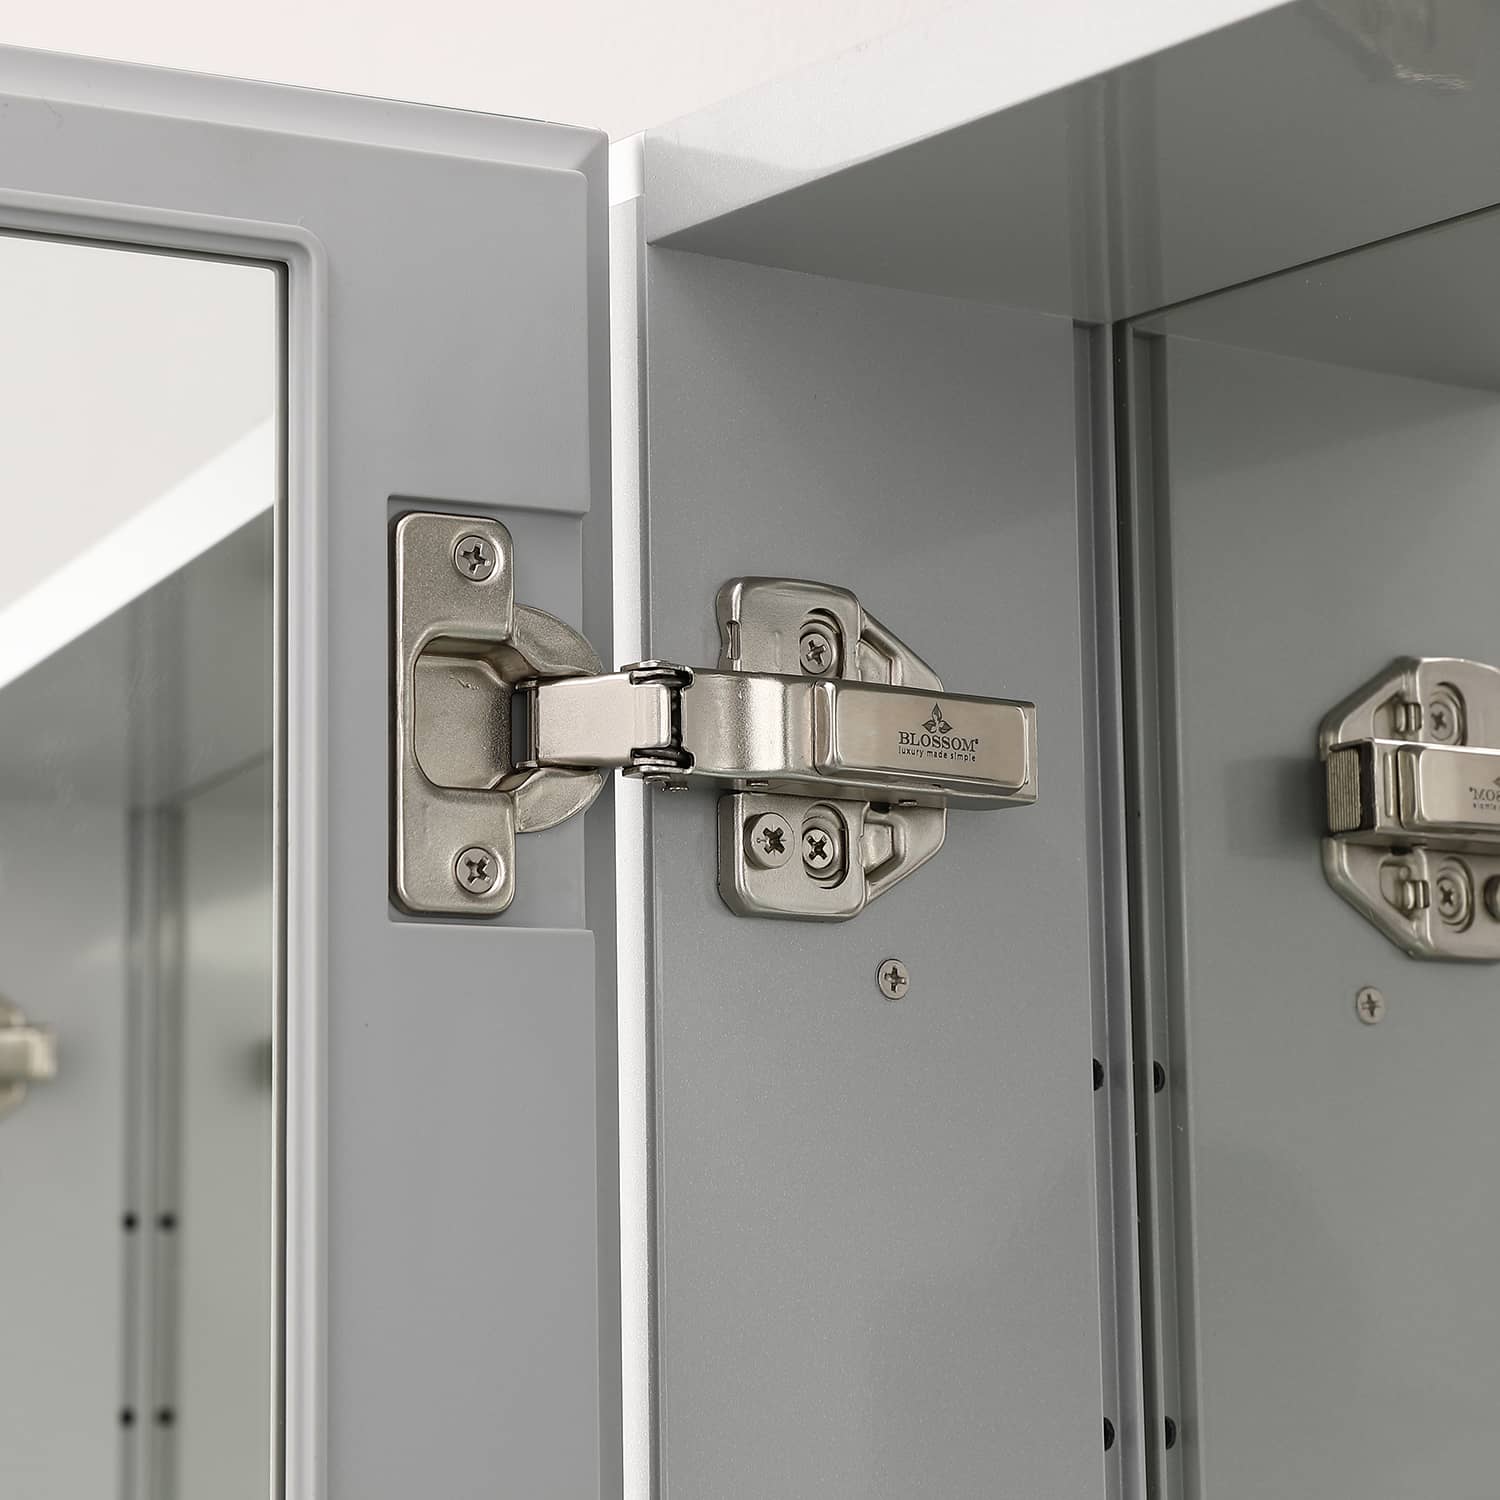 30" x 26" Double Door Reversible Hinge Frameless Mirrored Medicine Cabinet